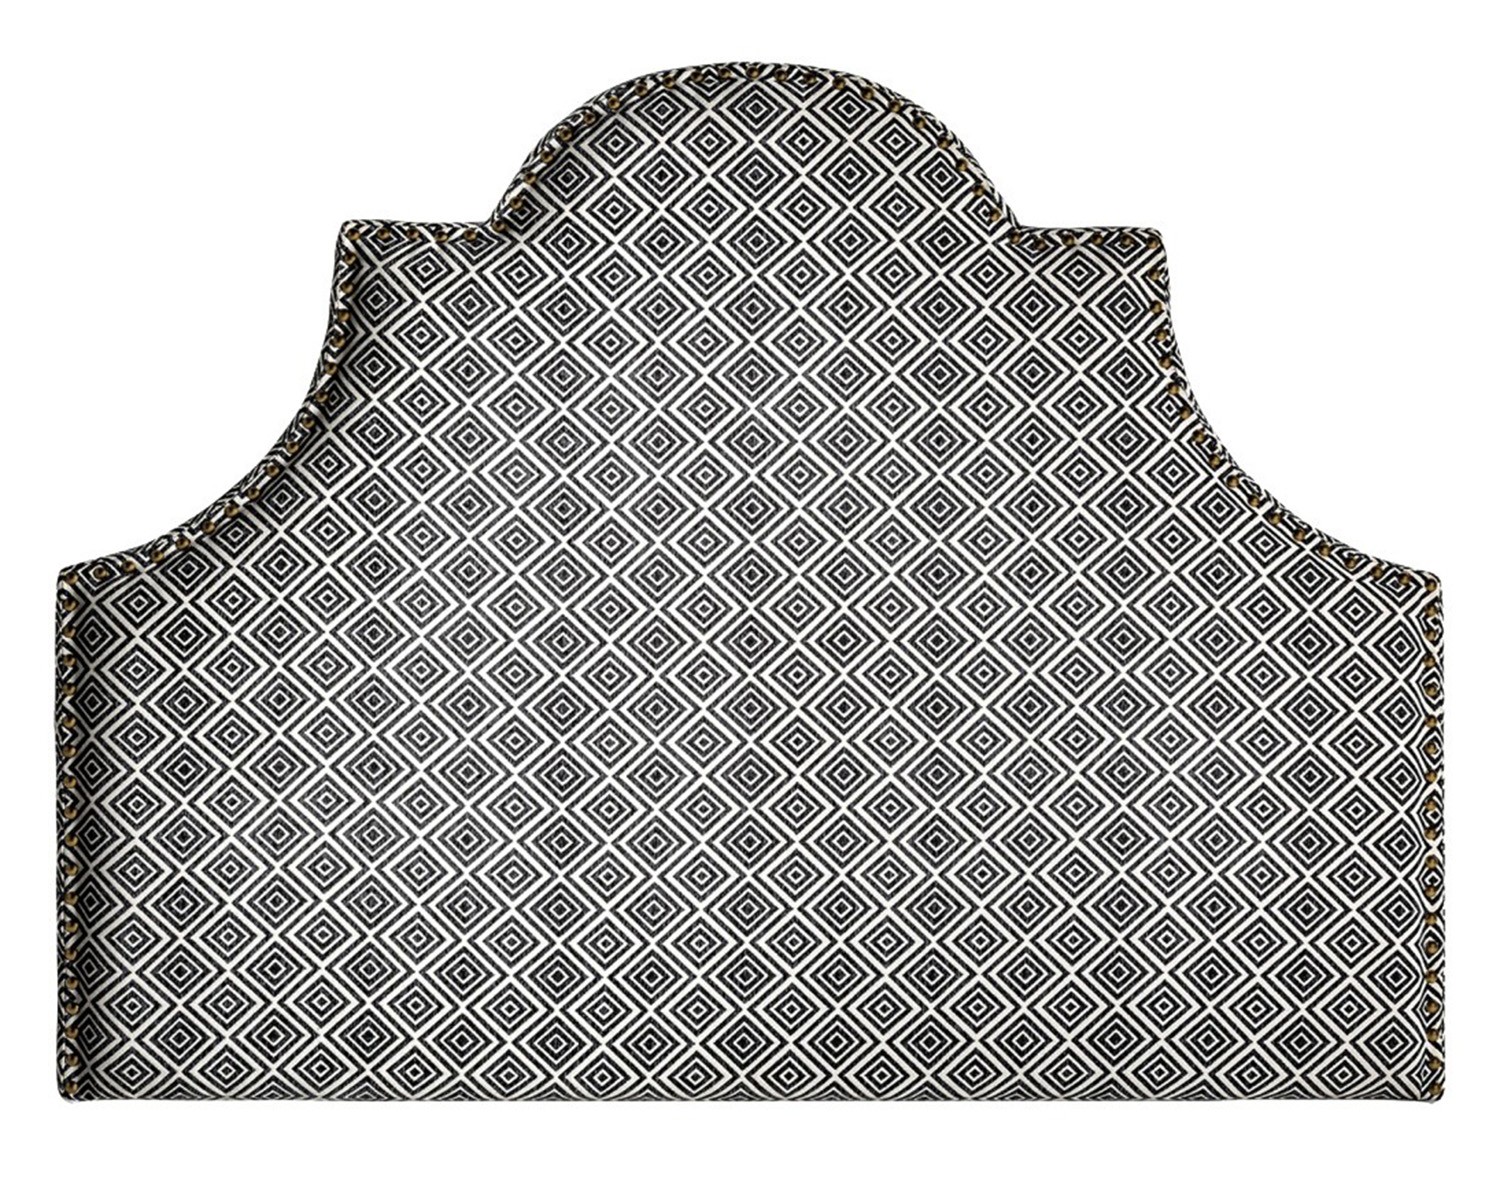 Moderné čalúnené čelo postele Spear s čierno-bielym vzorom a mosadzným vybíjaním